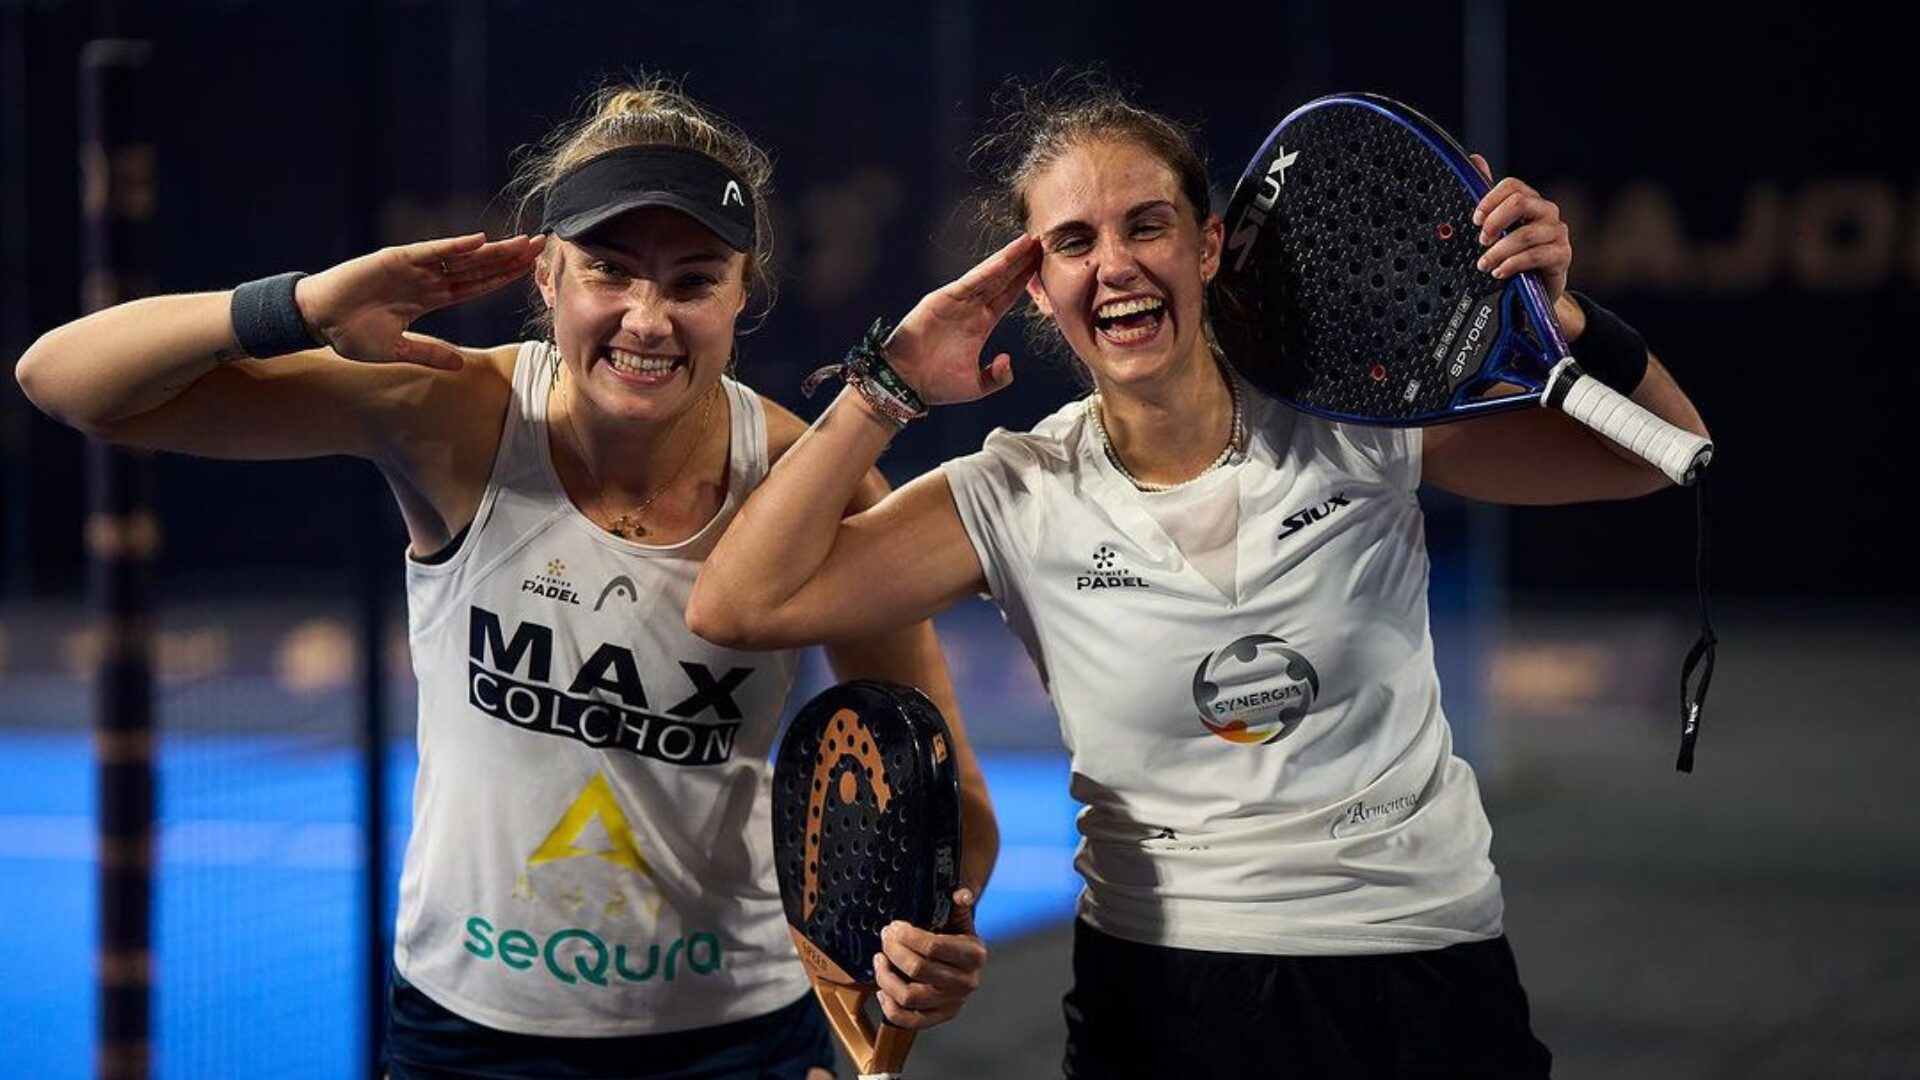 Qatar Major – Sharifova / Carnicero, a dupla surpresa das quartas de final